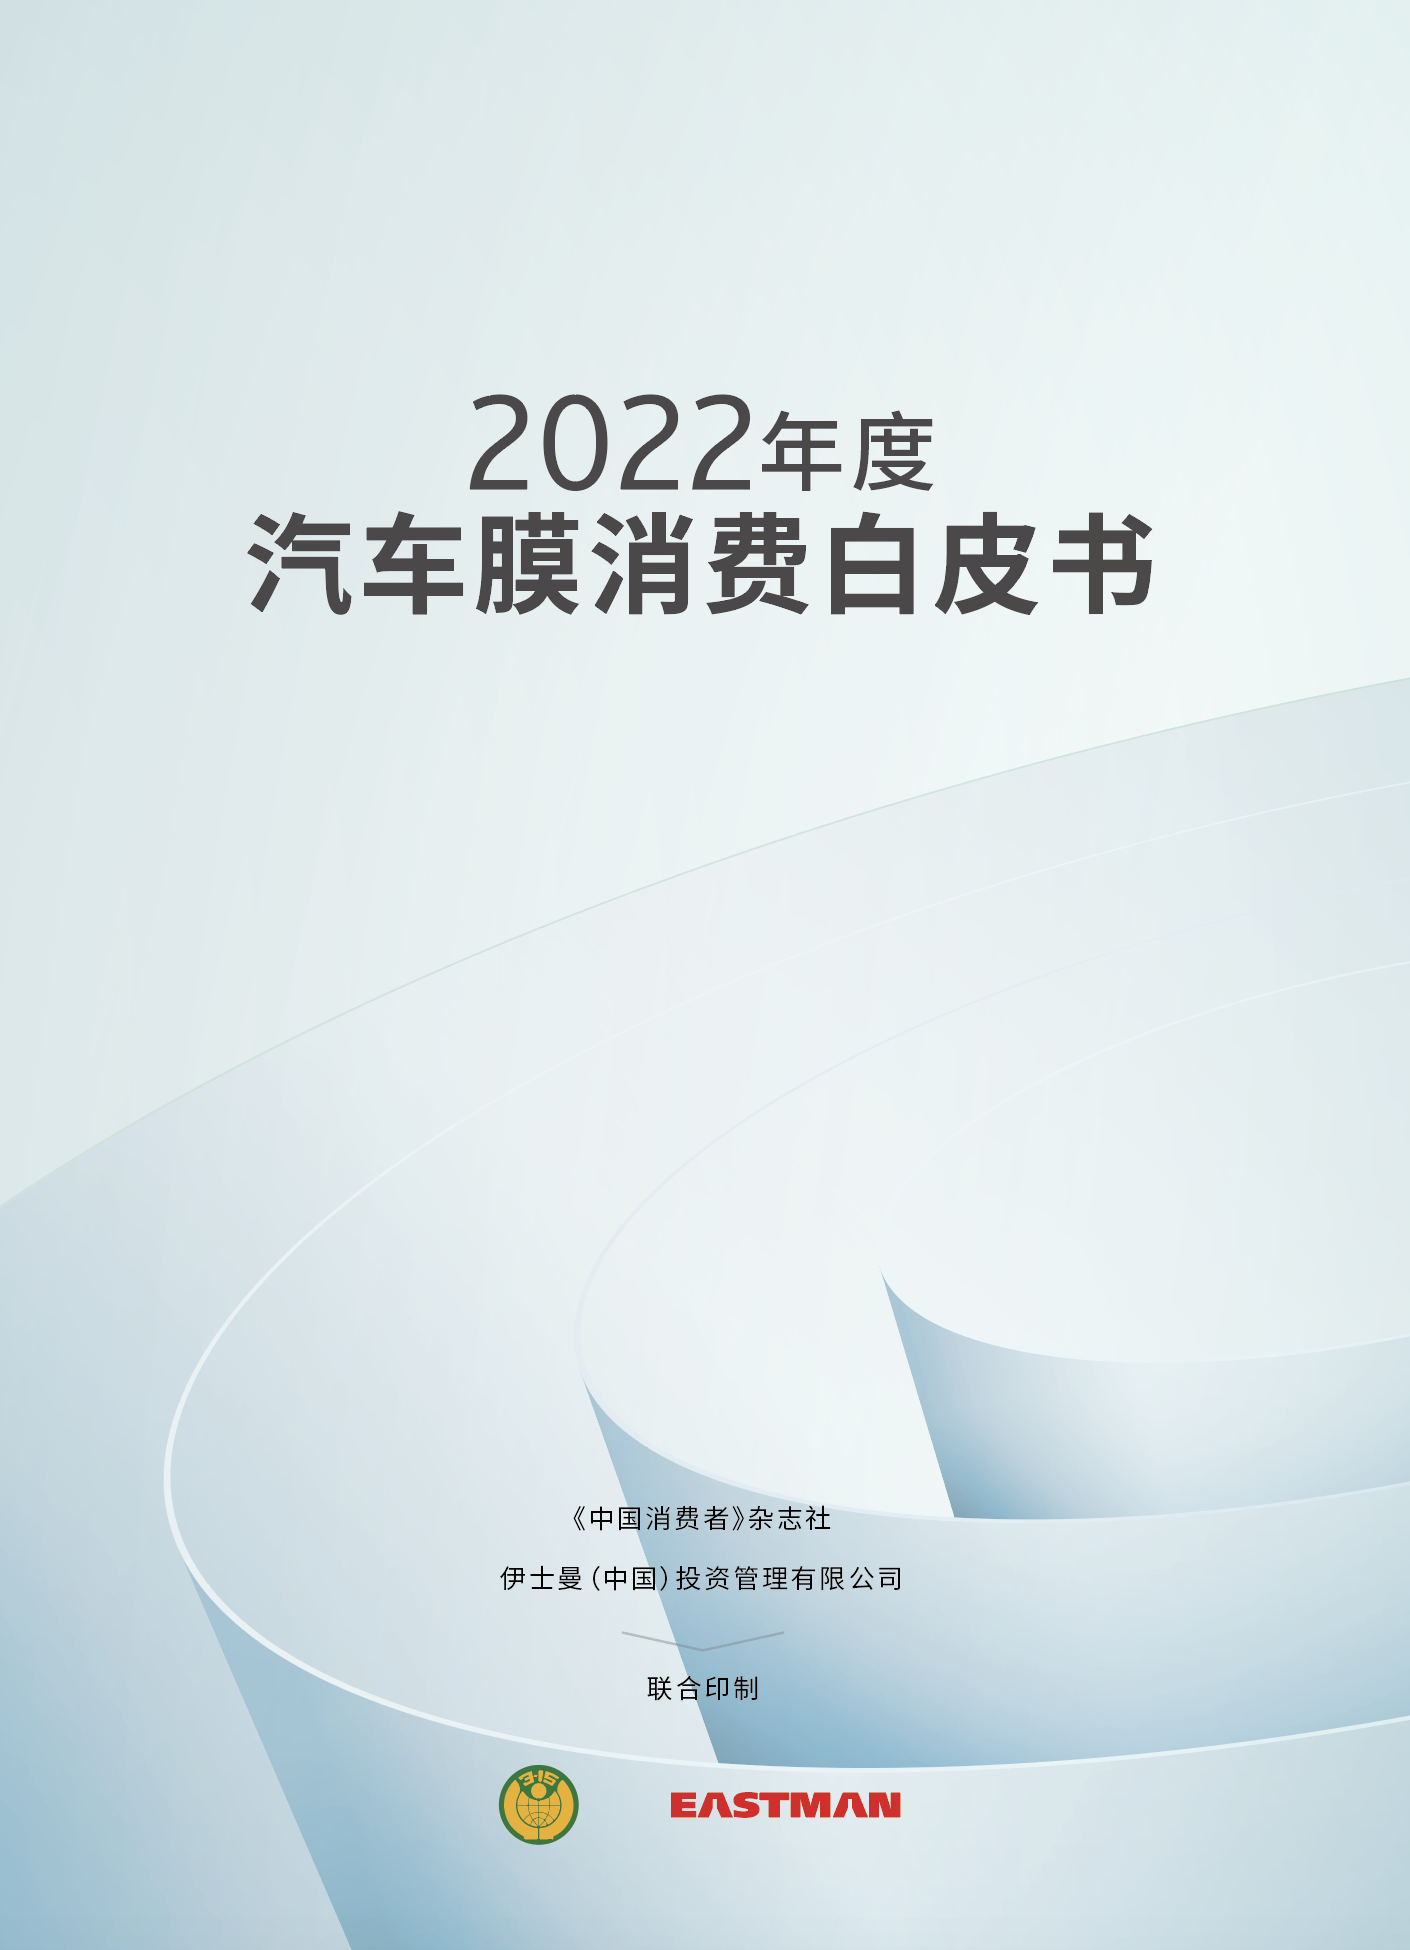 上图为2022年度汽车膜消费白皮书封面